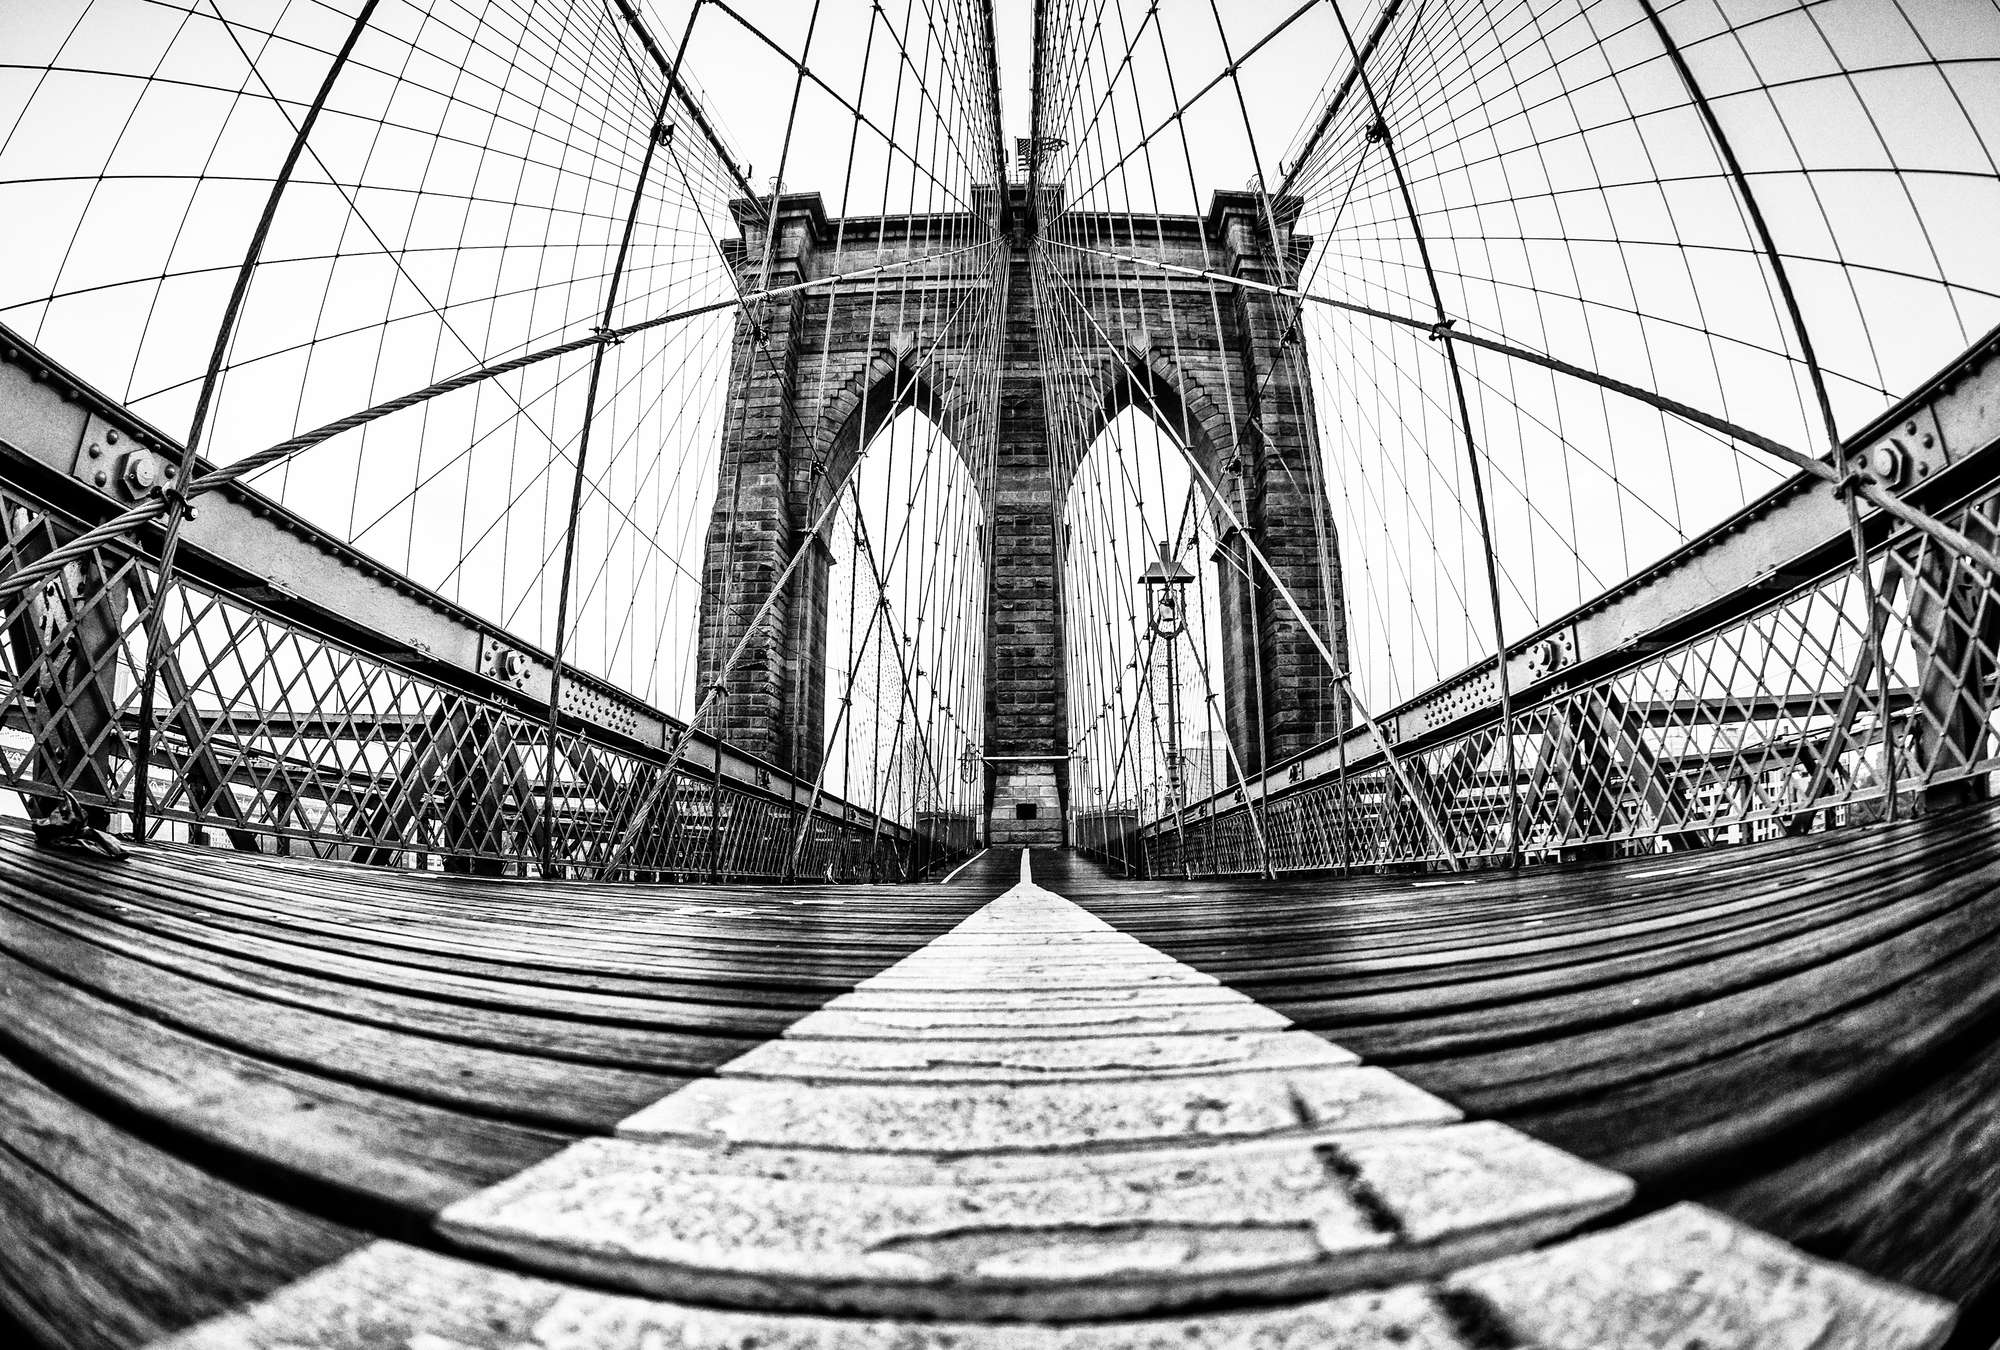             Fototapete Brooklyn Bridge in Schwarz-Weiß – Mattes Glattvlies
        